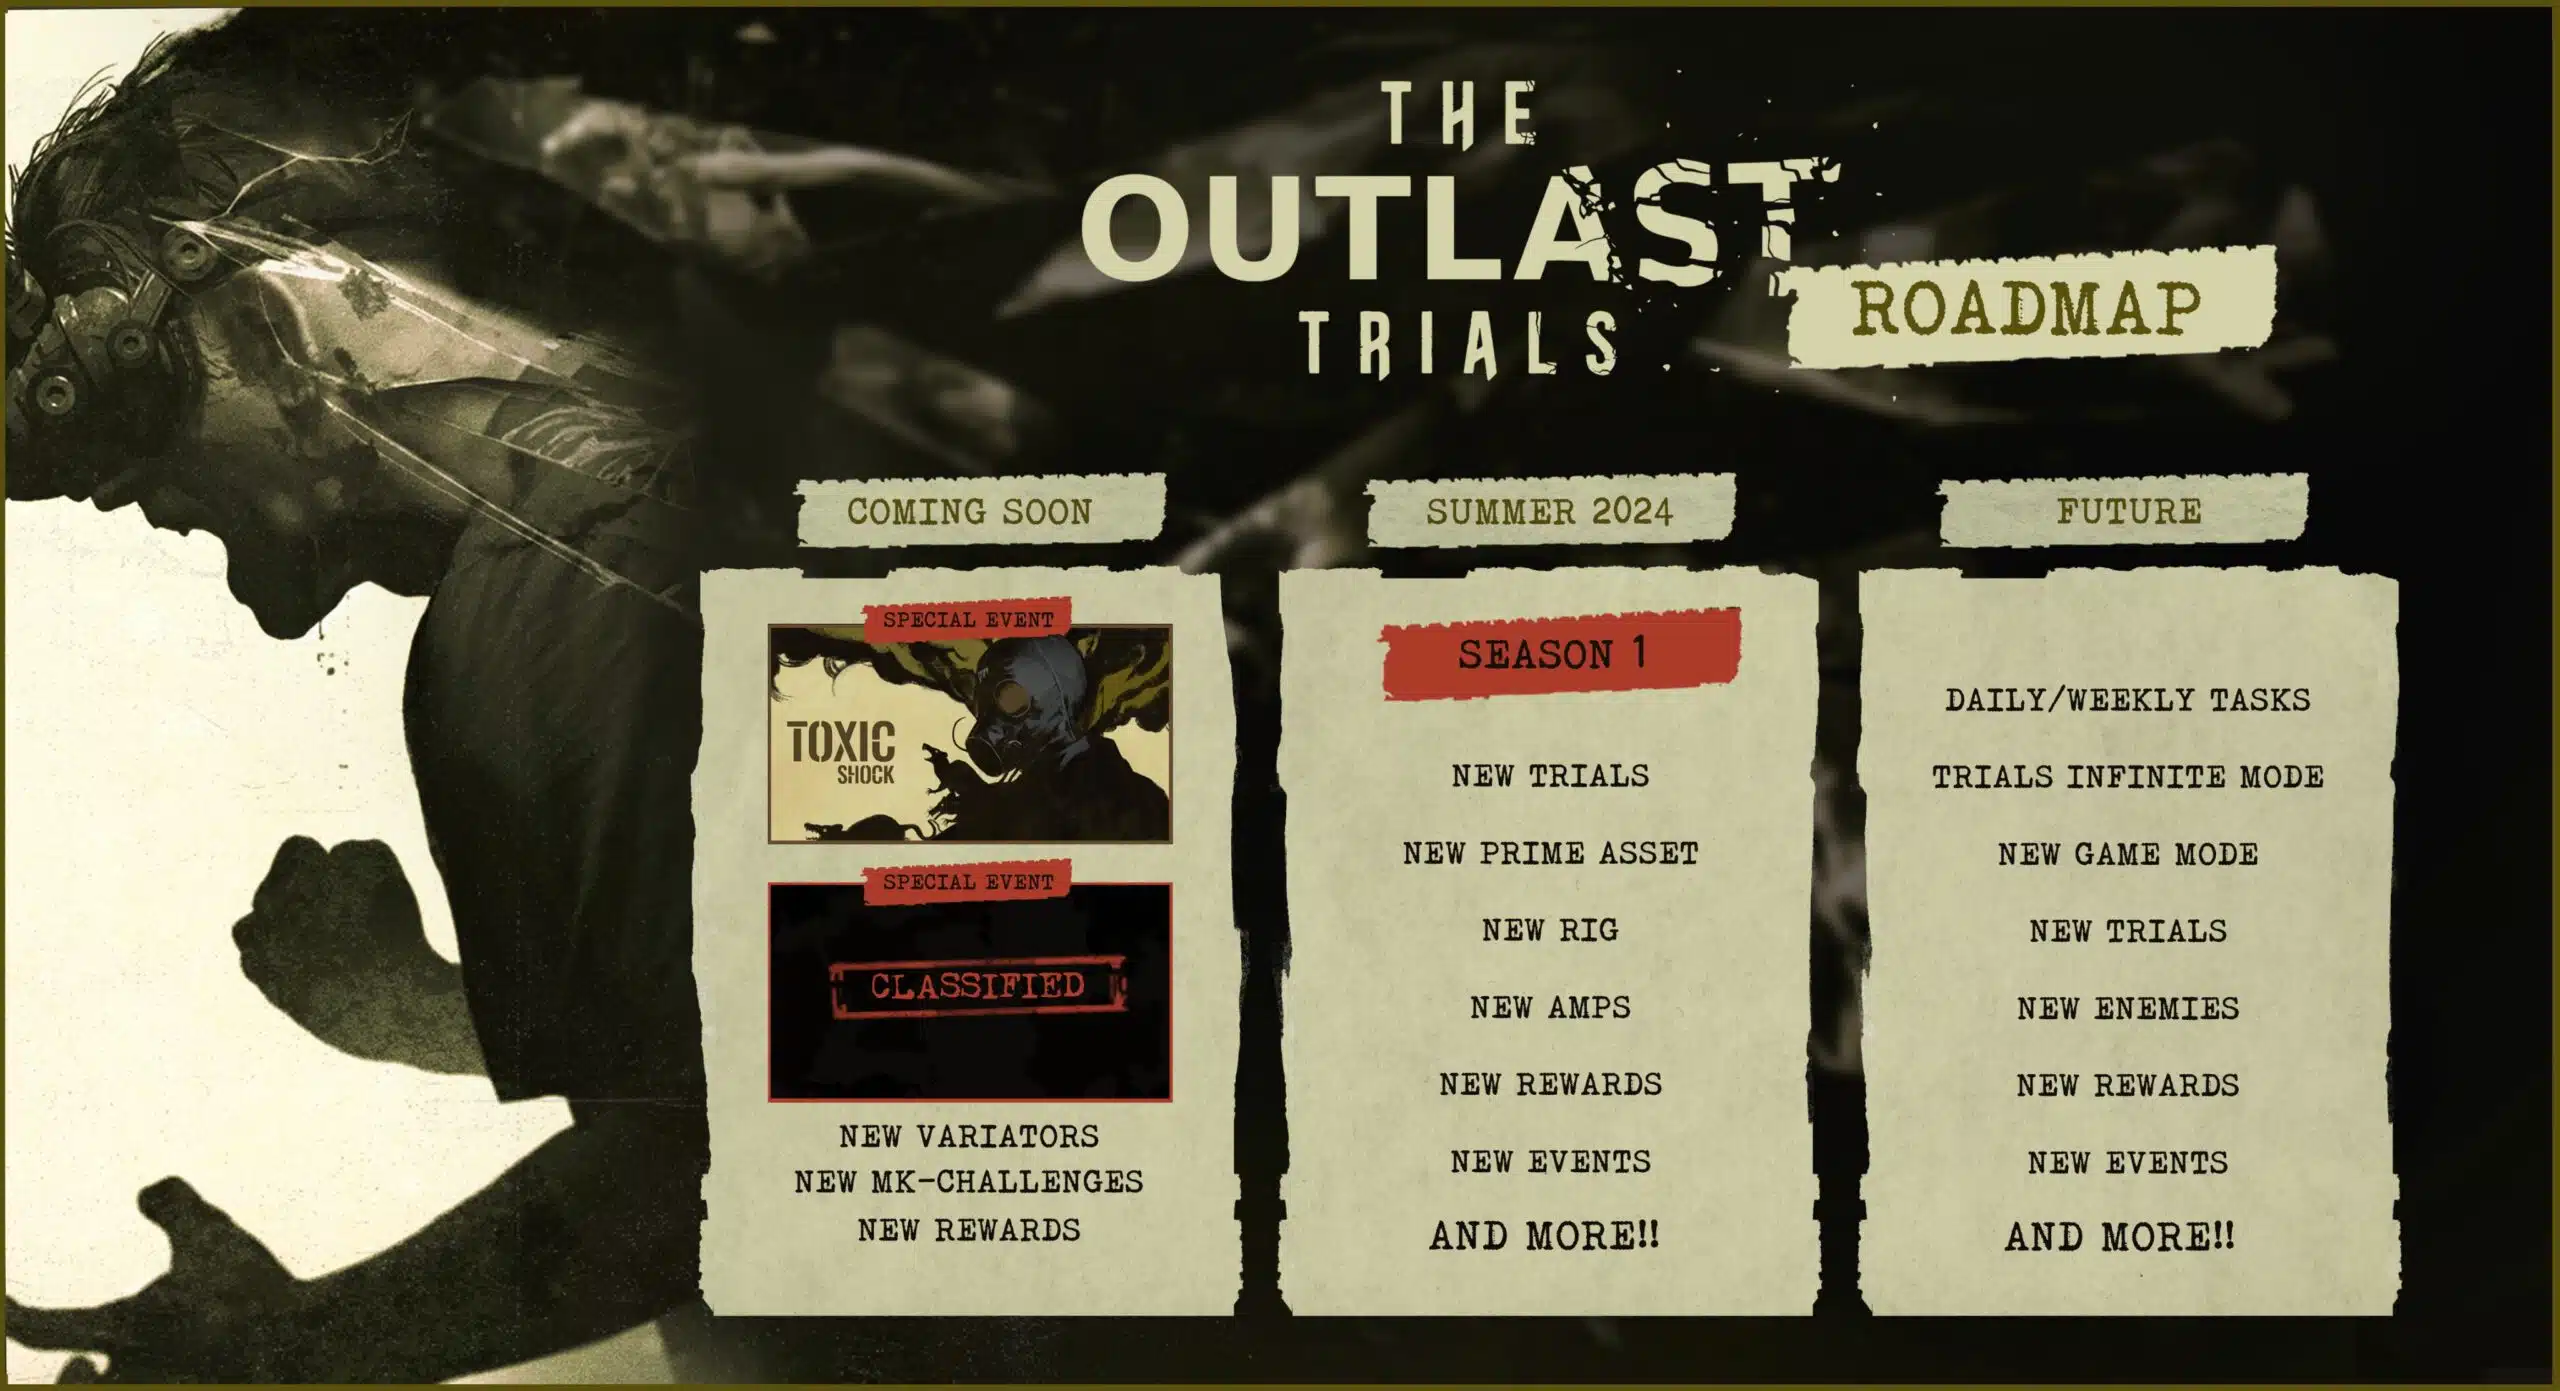 Imagem com as novidades de The Outlast Trials programadas.